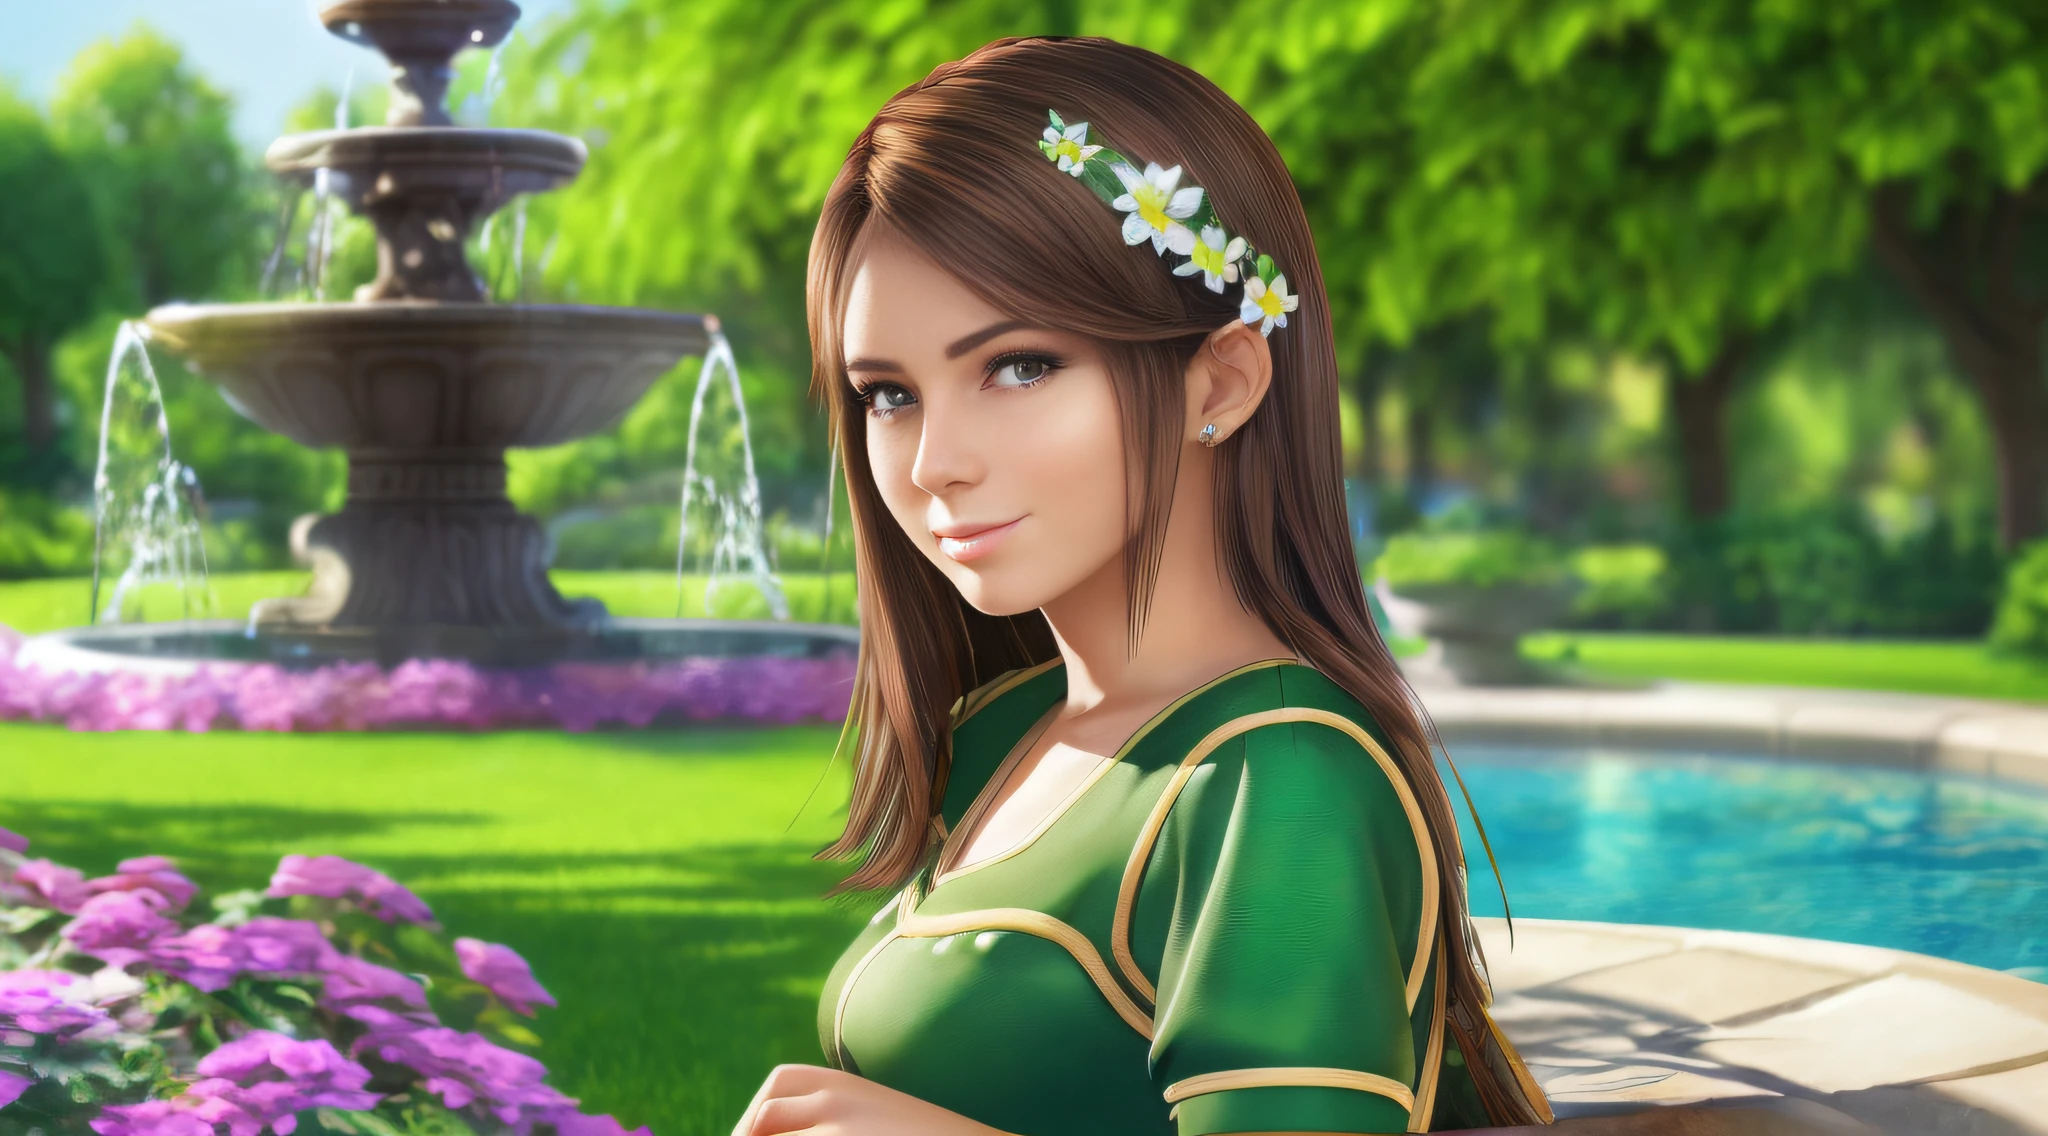 一名年輕女子在 (有噴泉的花園), 白皙的皮膚, 詳細的臉部, 完美的眼睛, (棕色的頭髮), (鬱鬱蔥蔥的綠色植被), 溫帶天氣, 笑容真好, 正面照, 穿著夏季服裝, (極度細緻的Unity 8K壁紙, 最好的品質, 傑作)